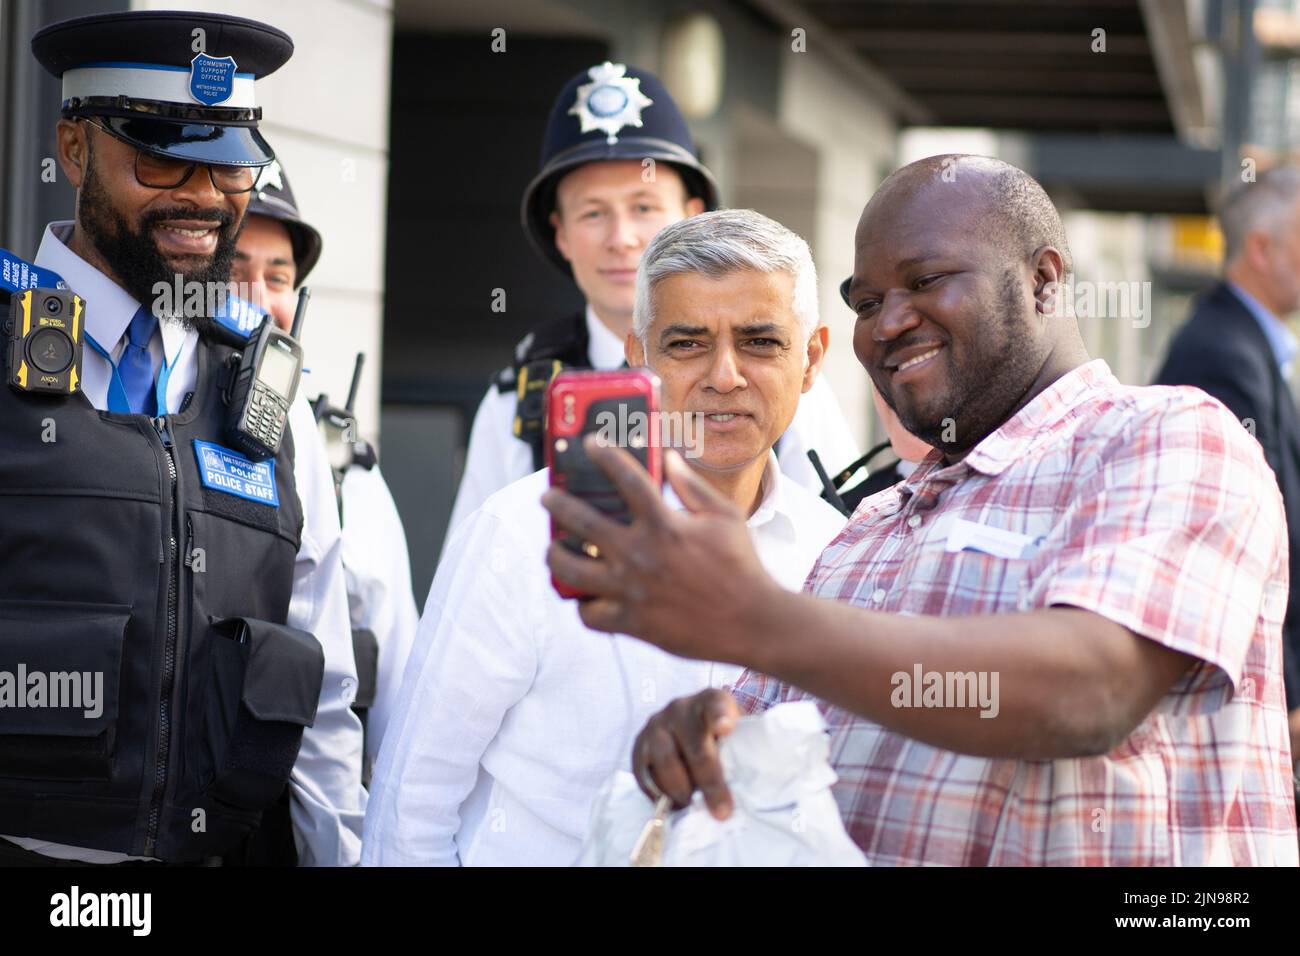 El alcalde de Londres Sadiq Khan durante una visita a Tottenham Hale Village, al norte de Londres, donde se unió a un equipo de policía de barrio patrullando y visitando el centro juvenil Eagle Heights, que está financiado por la Unidad de Reducción de la Violencia del Alcalde. Fecha de la foto: Miércoles 10 de agosto de 2022. Foto de stock